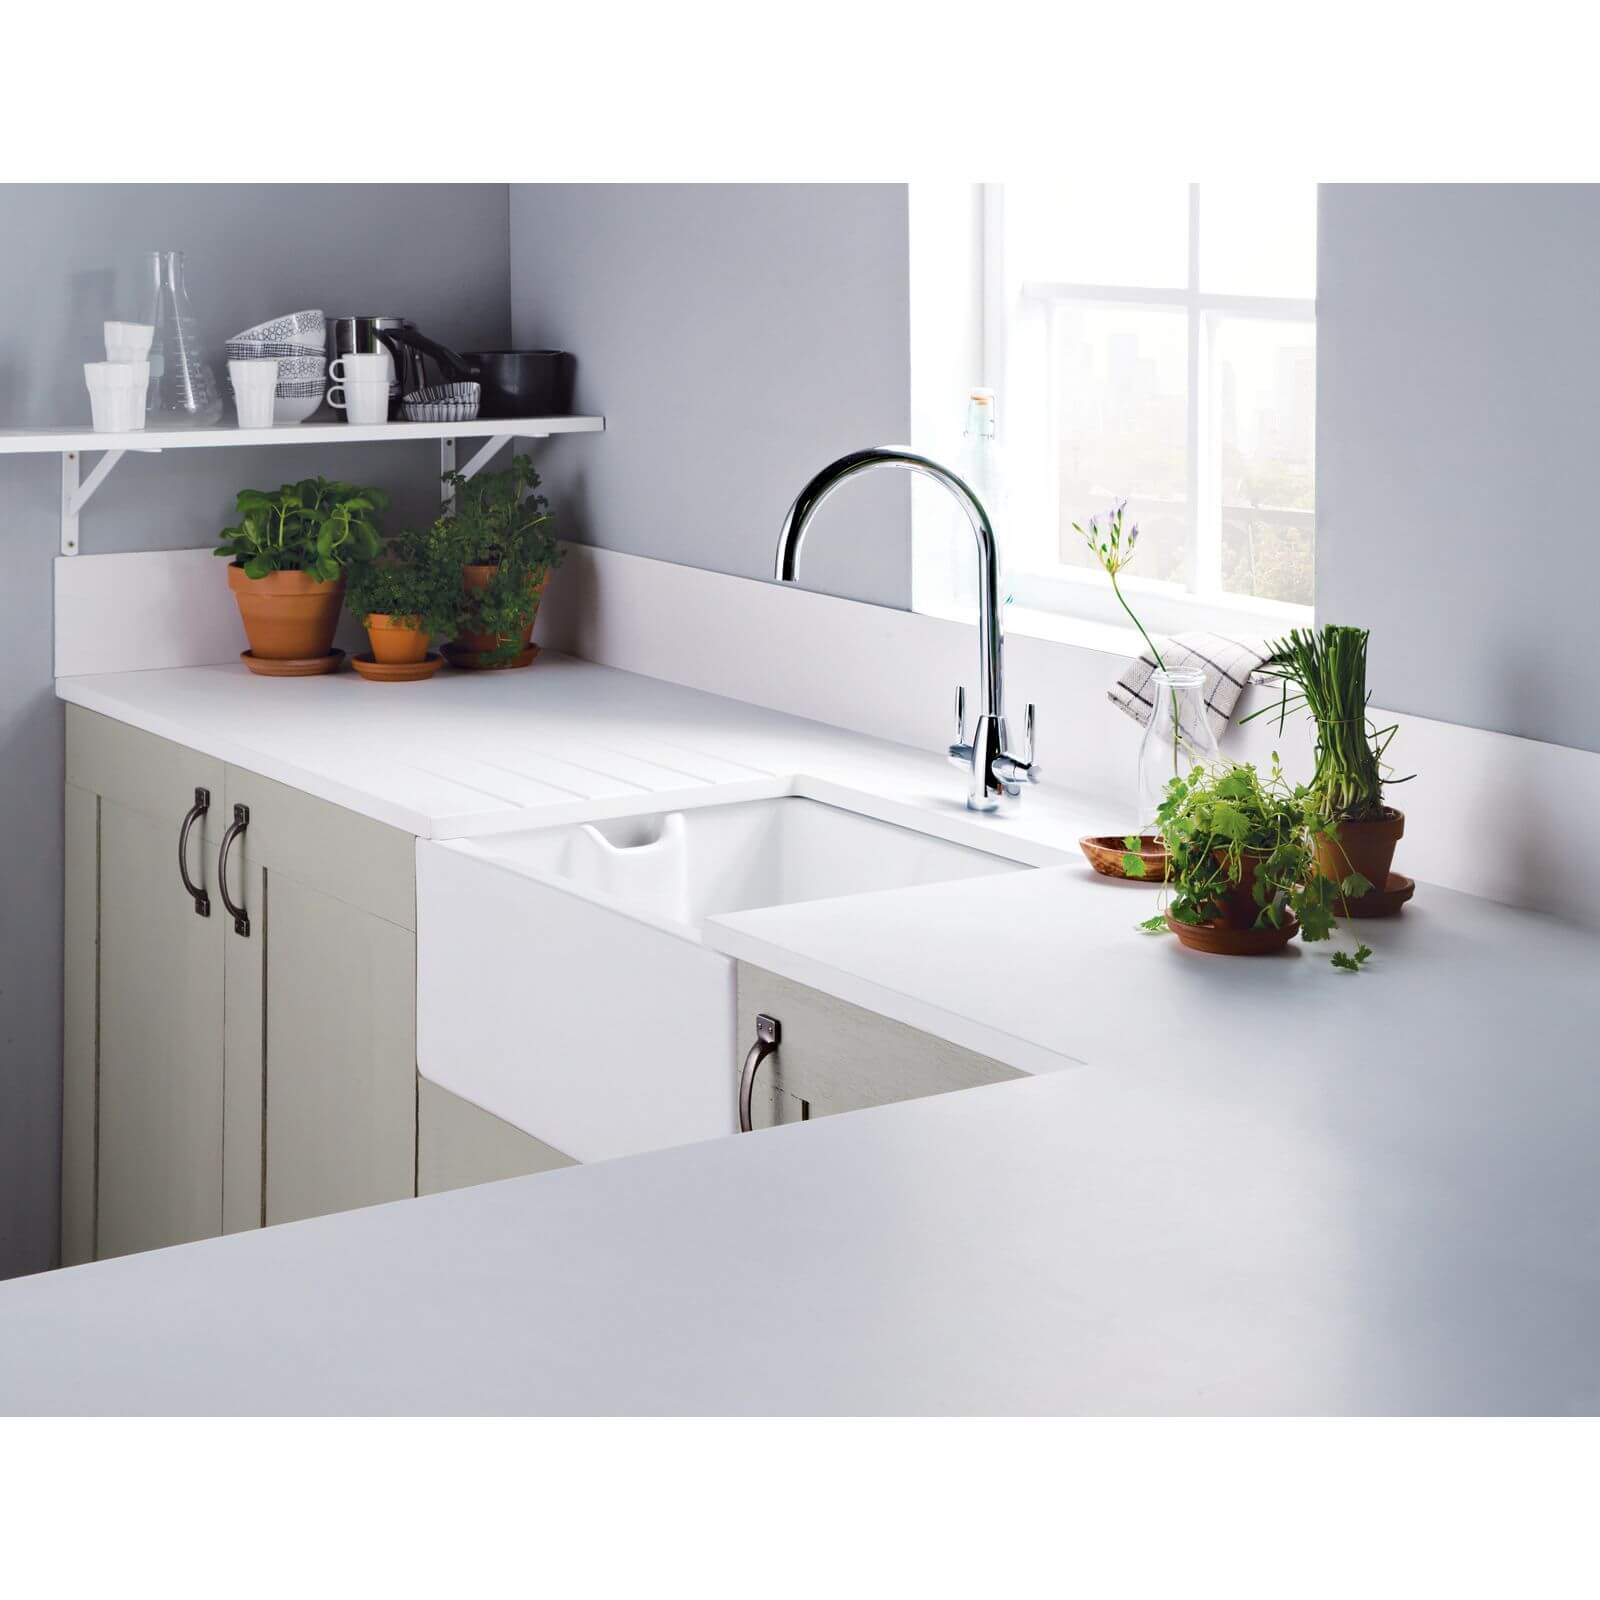 Minerva White Kitchen Worktop - 150 x 65 x 2.5cm